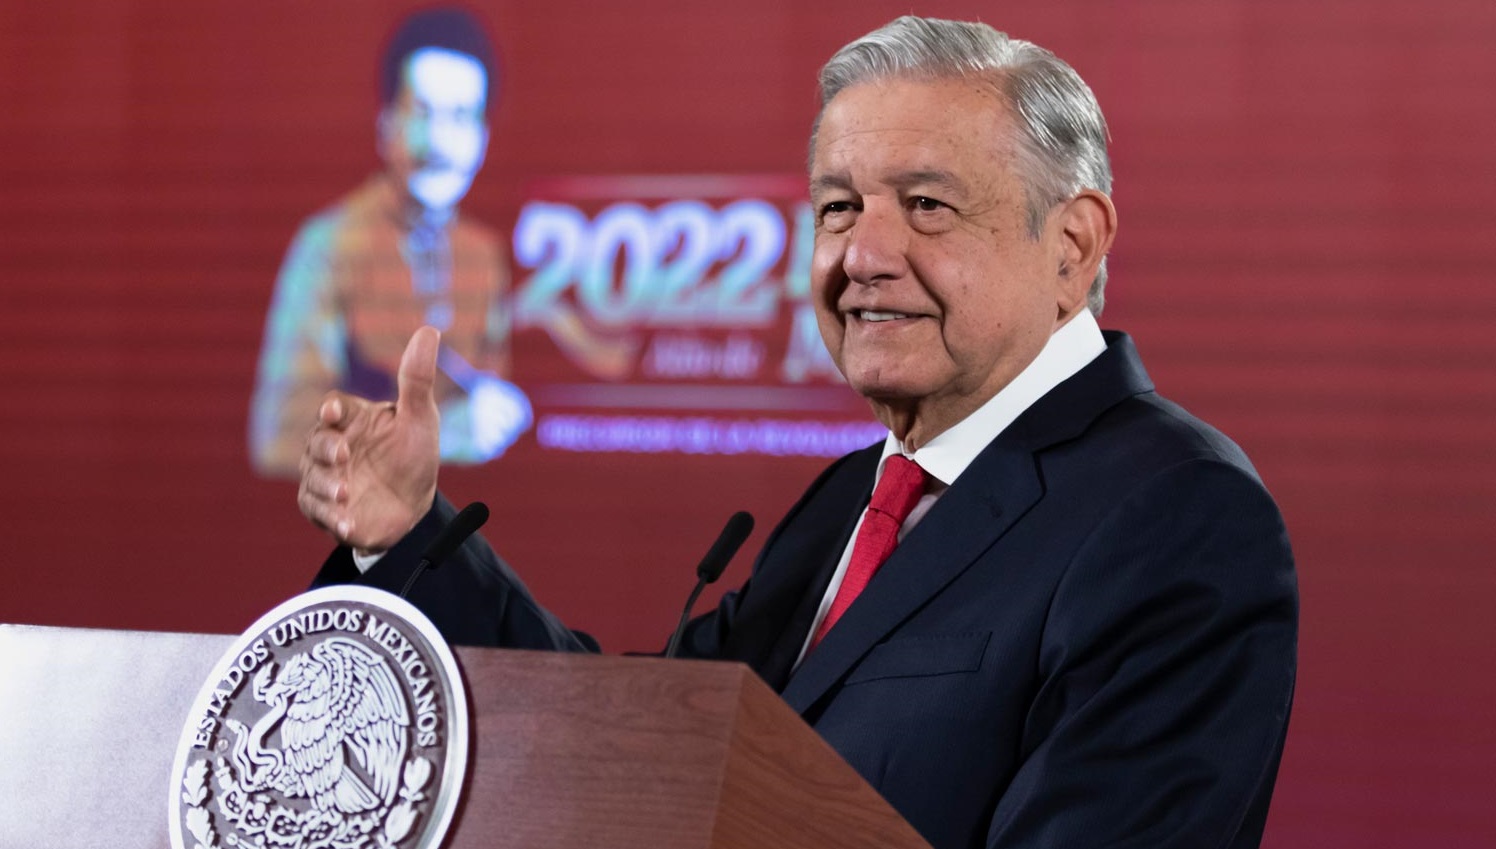 Gobierno entregara en 2022 Aeropuerto Internacional Felipe Angeles y Refineria Dos Bocas afirma Lopez Obrador